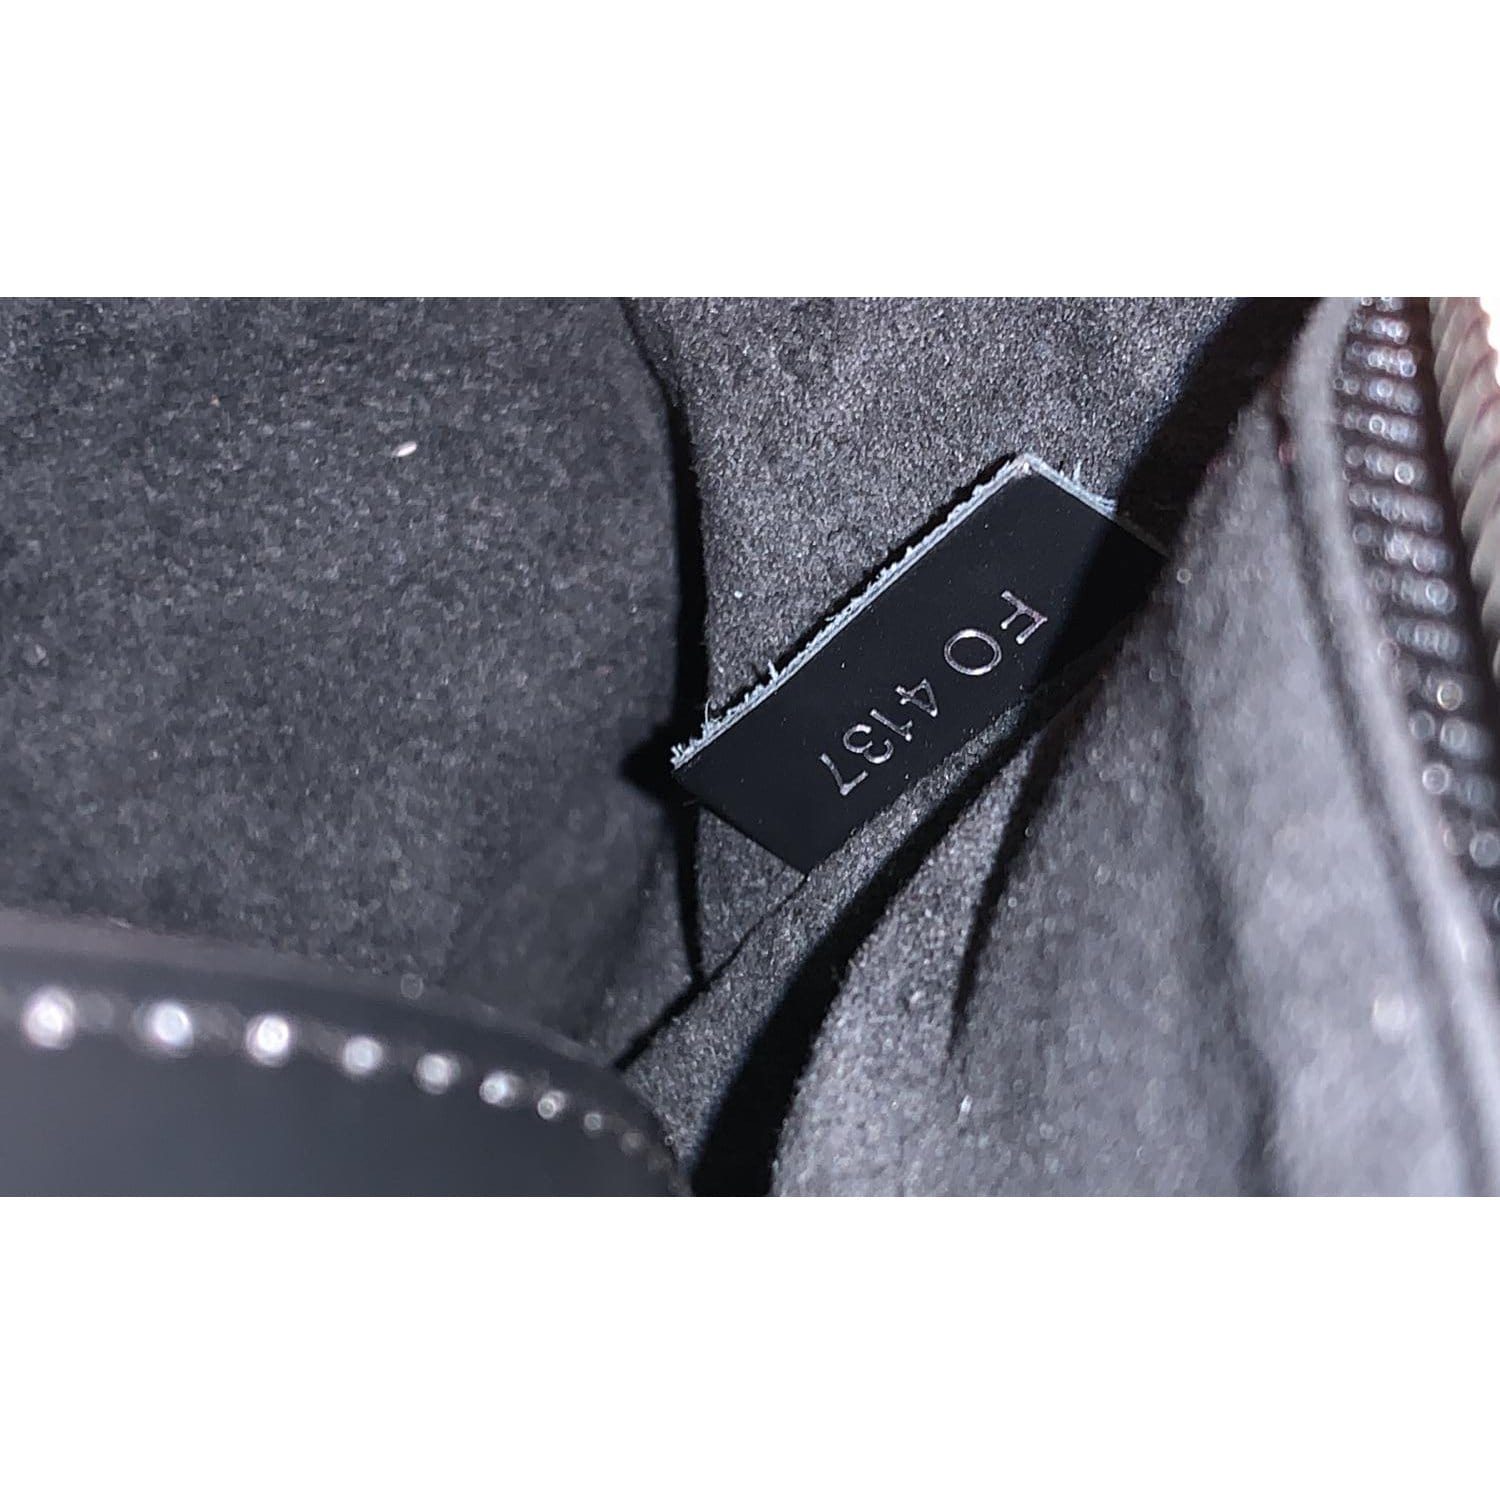 Louis Vuitton Kleber Handbag 344453